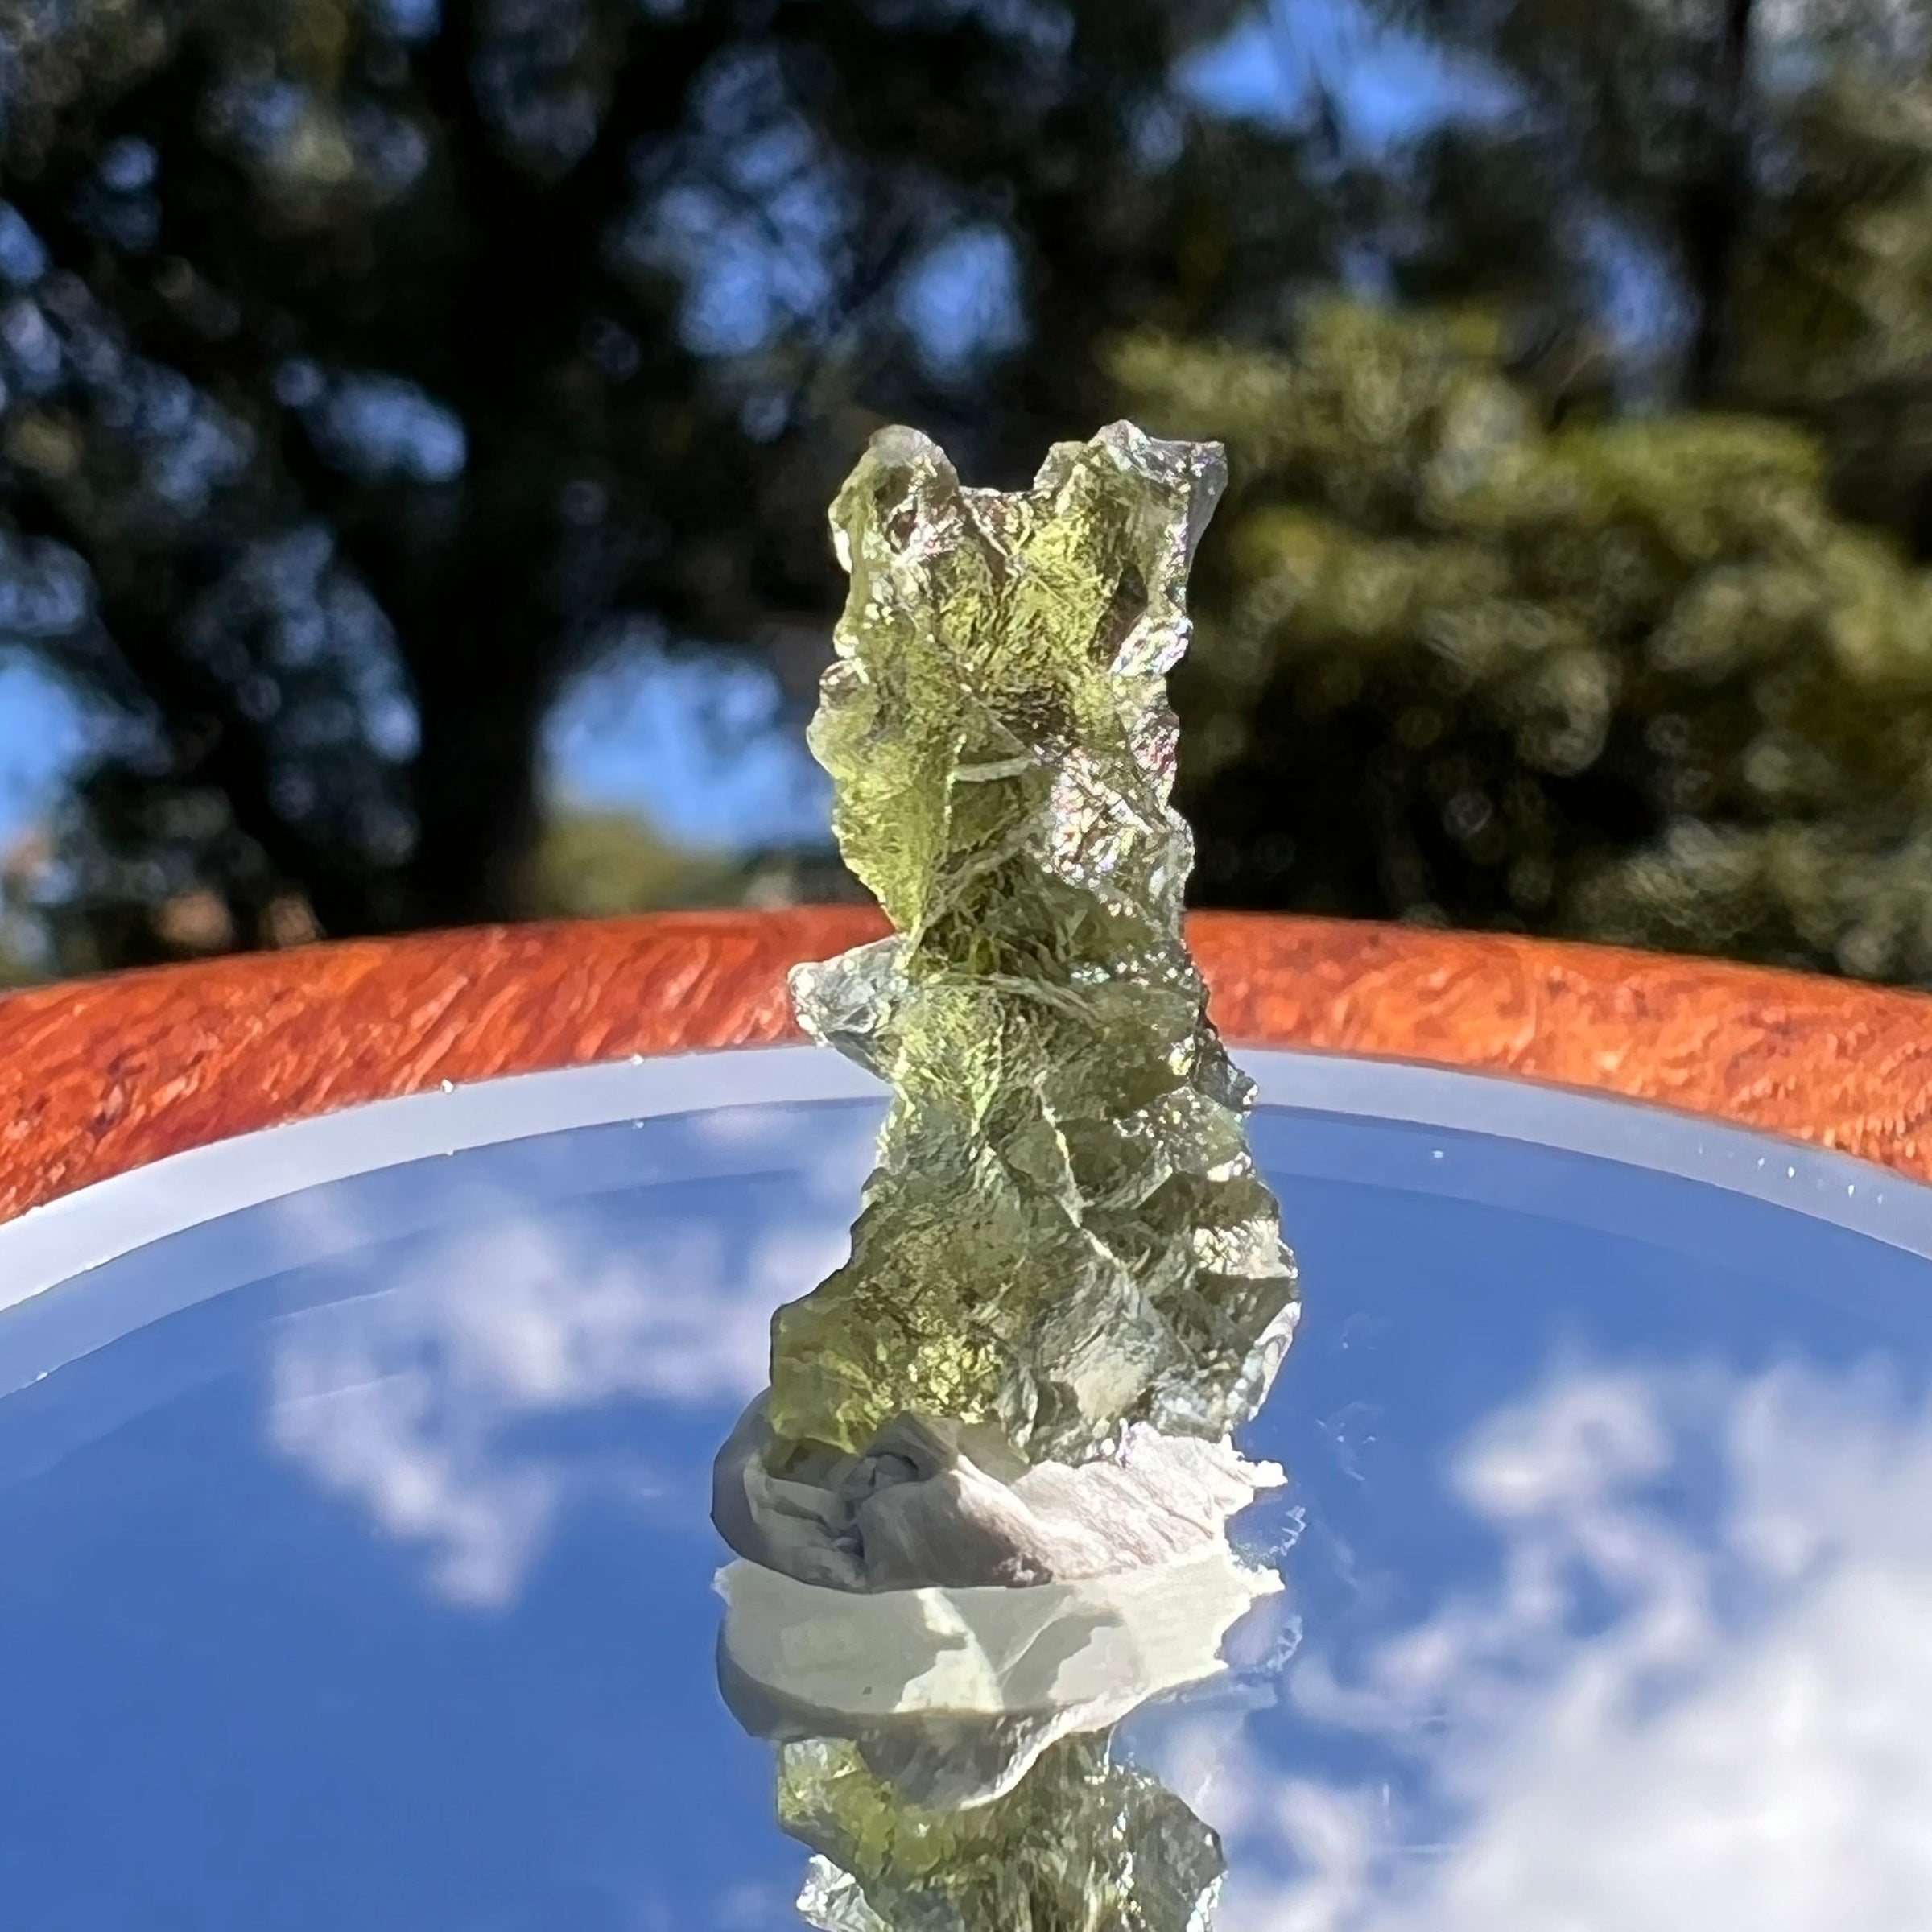 Besednice Moldavite 0.87 grams #514-Moldavite Life